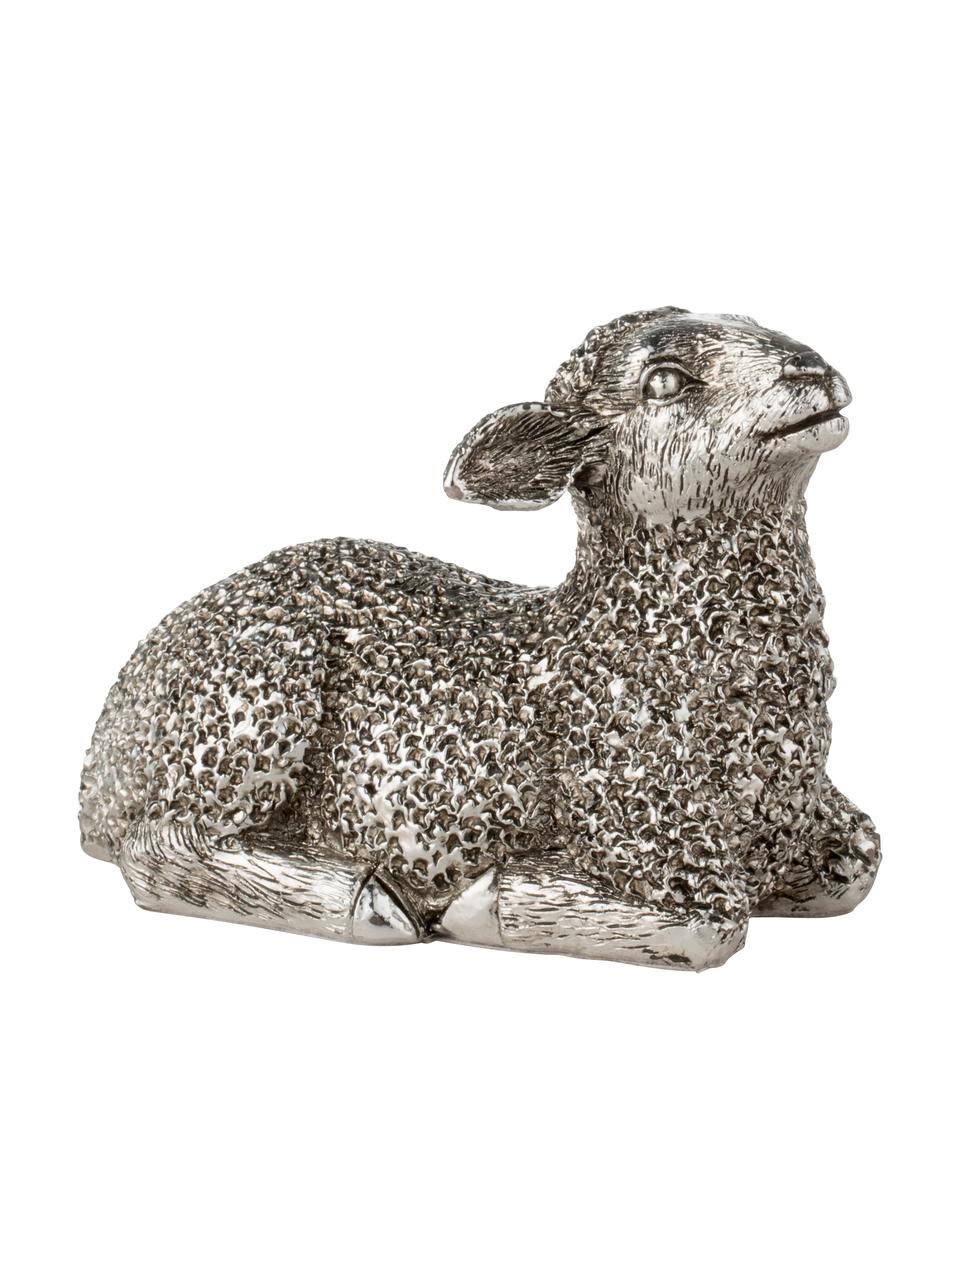 Deko-Objekt Lamb, Kunststoff, Silberfarben, 9 x 6 cm